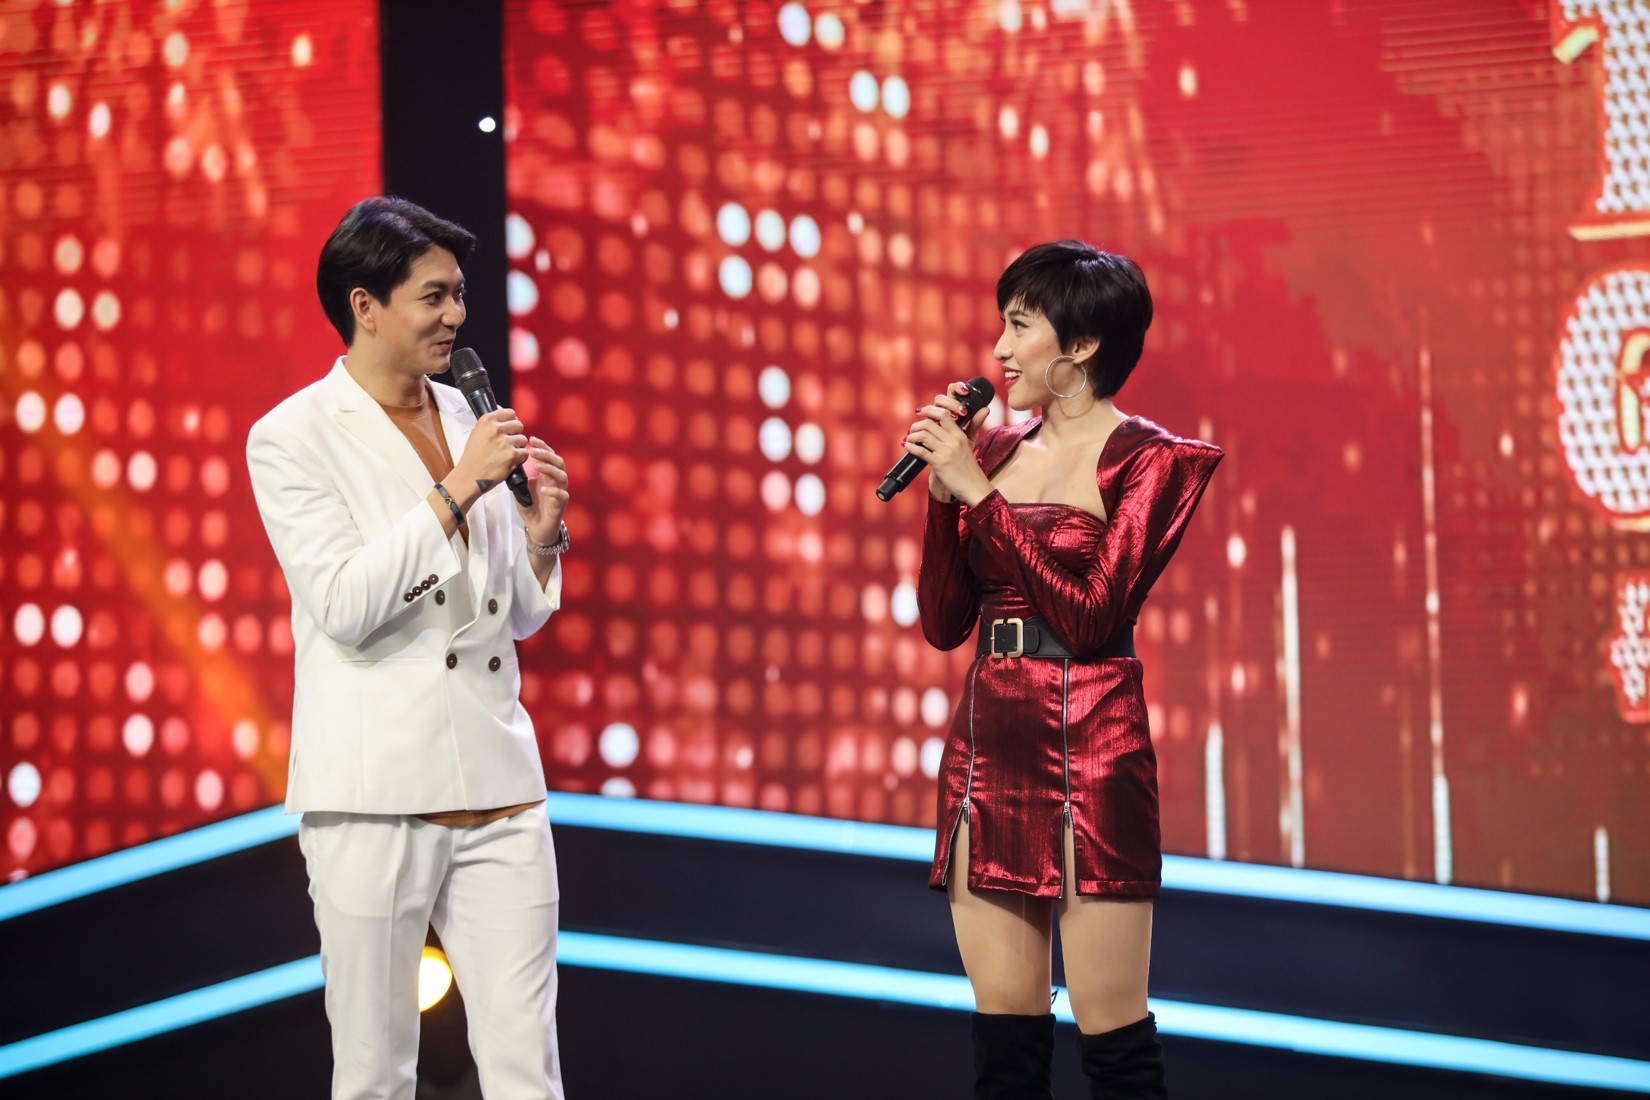 Chồng cũ Trương Quỳnh Anh "thả thính" nữ vũ công nóng bỏng trên sóng truyền hình - 3